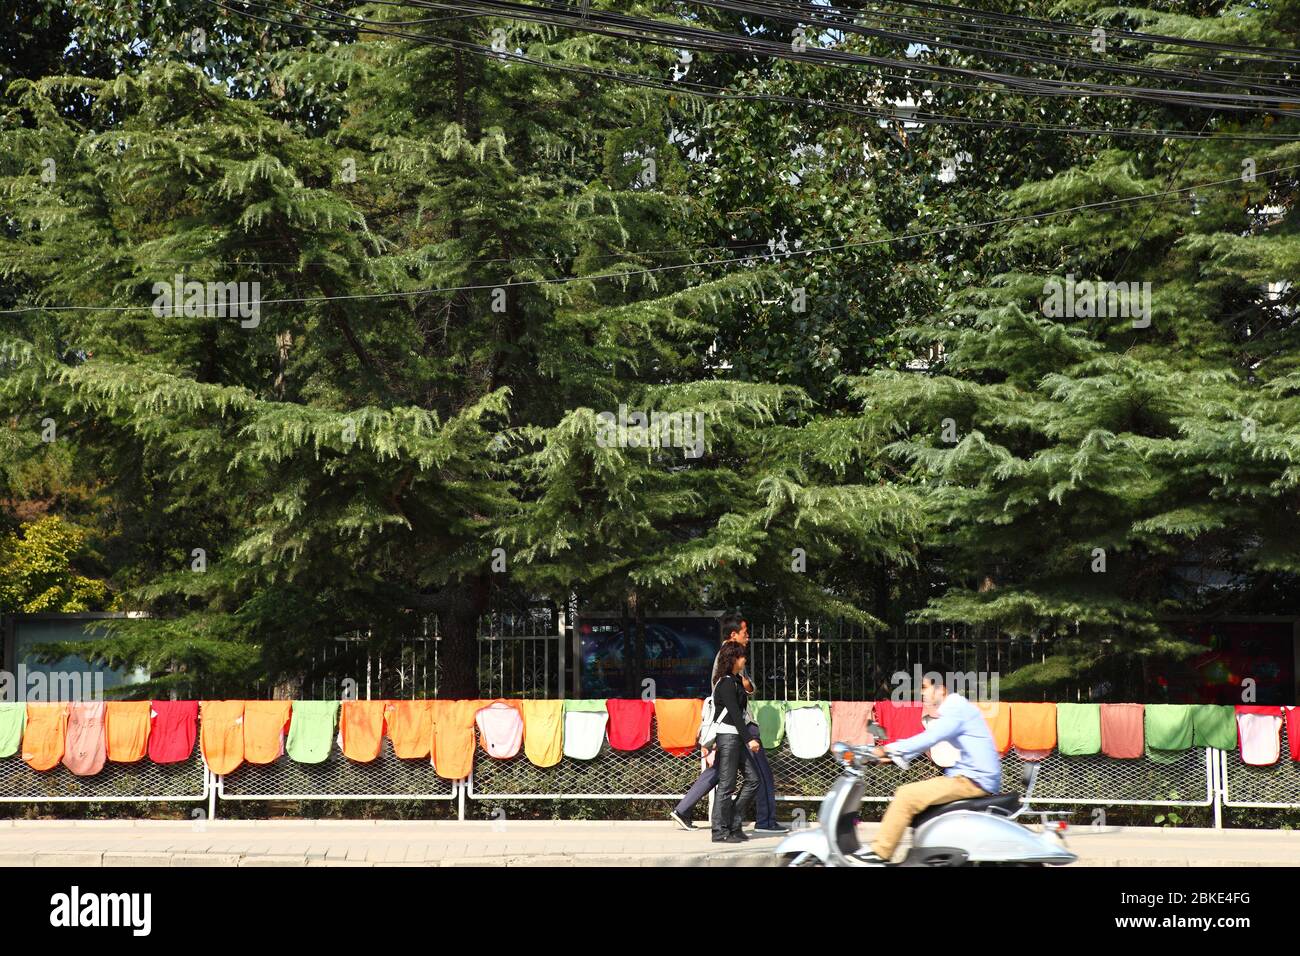 Blick auf die Wäsche hängen am Zaun im öffentlichen Raum. Peking, China. Stockfoto